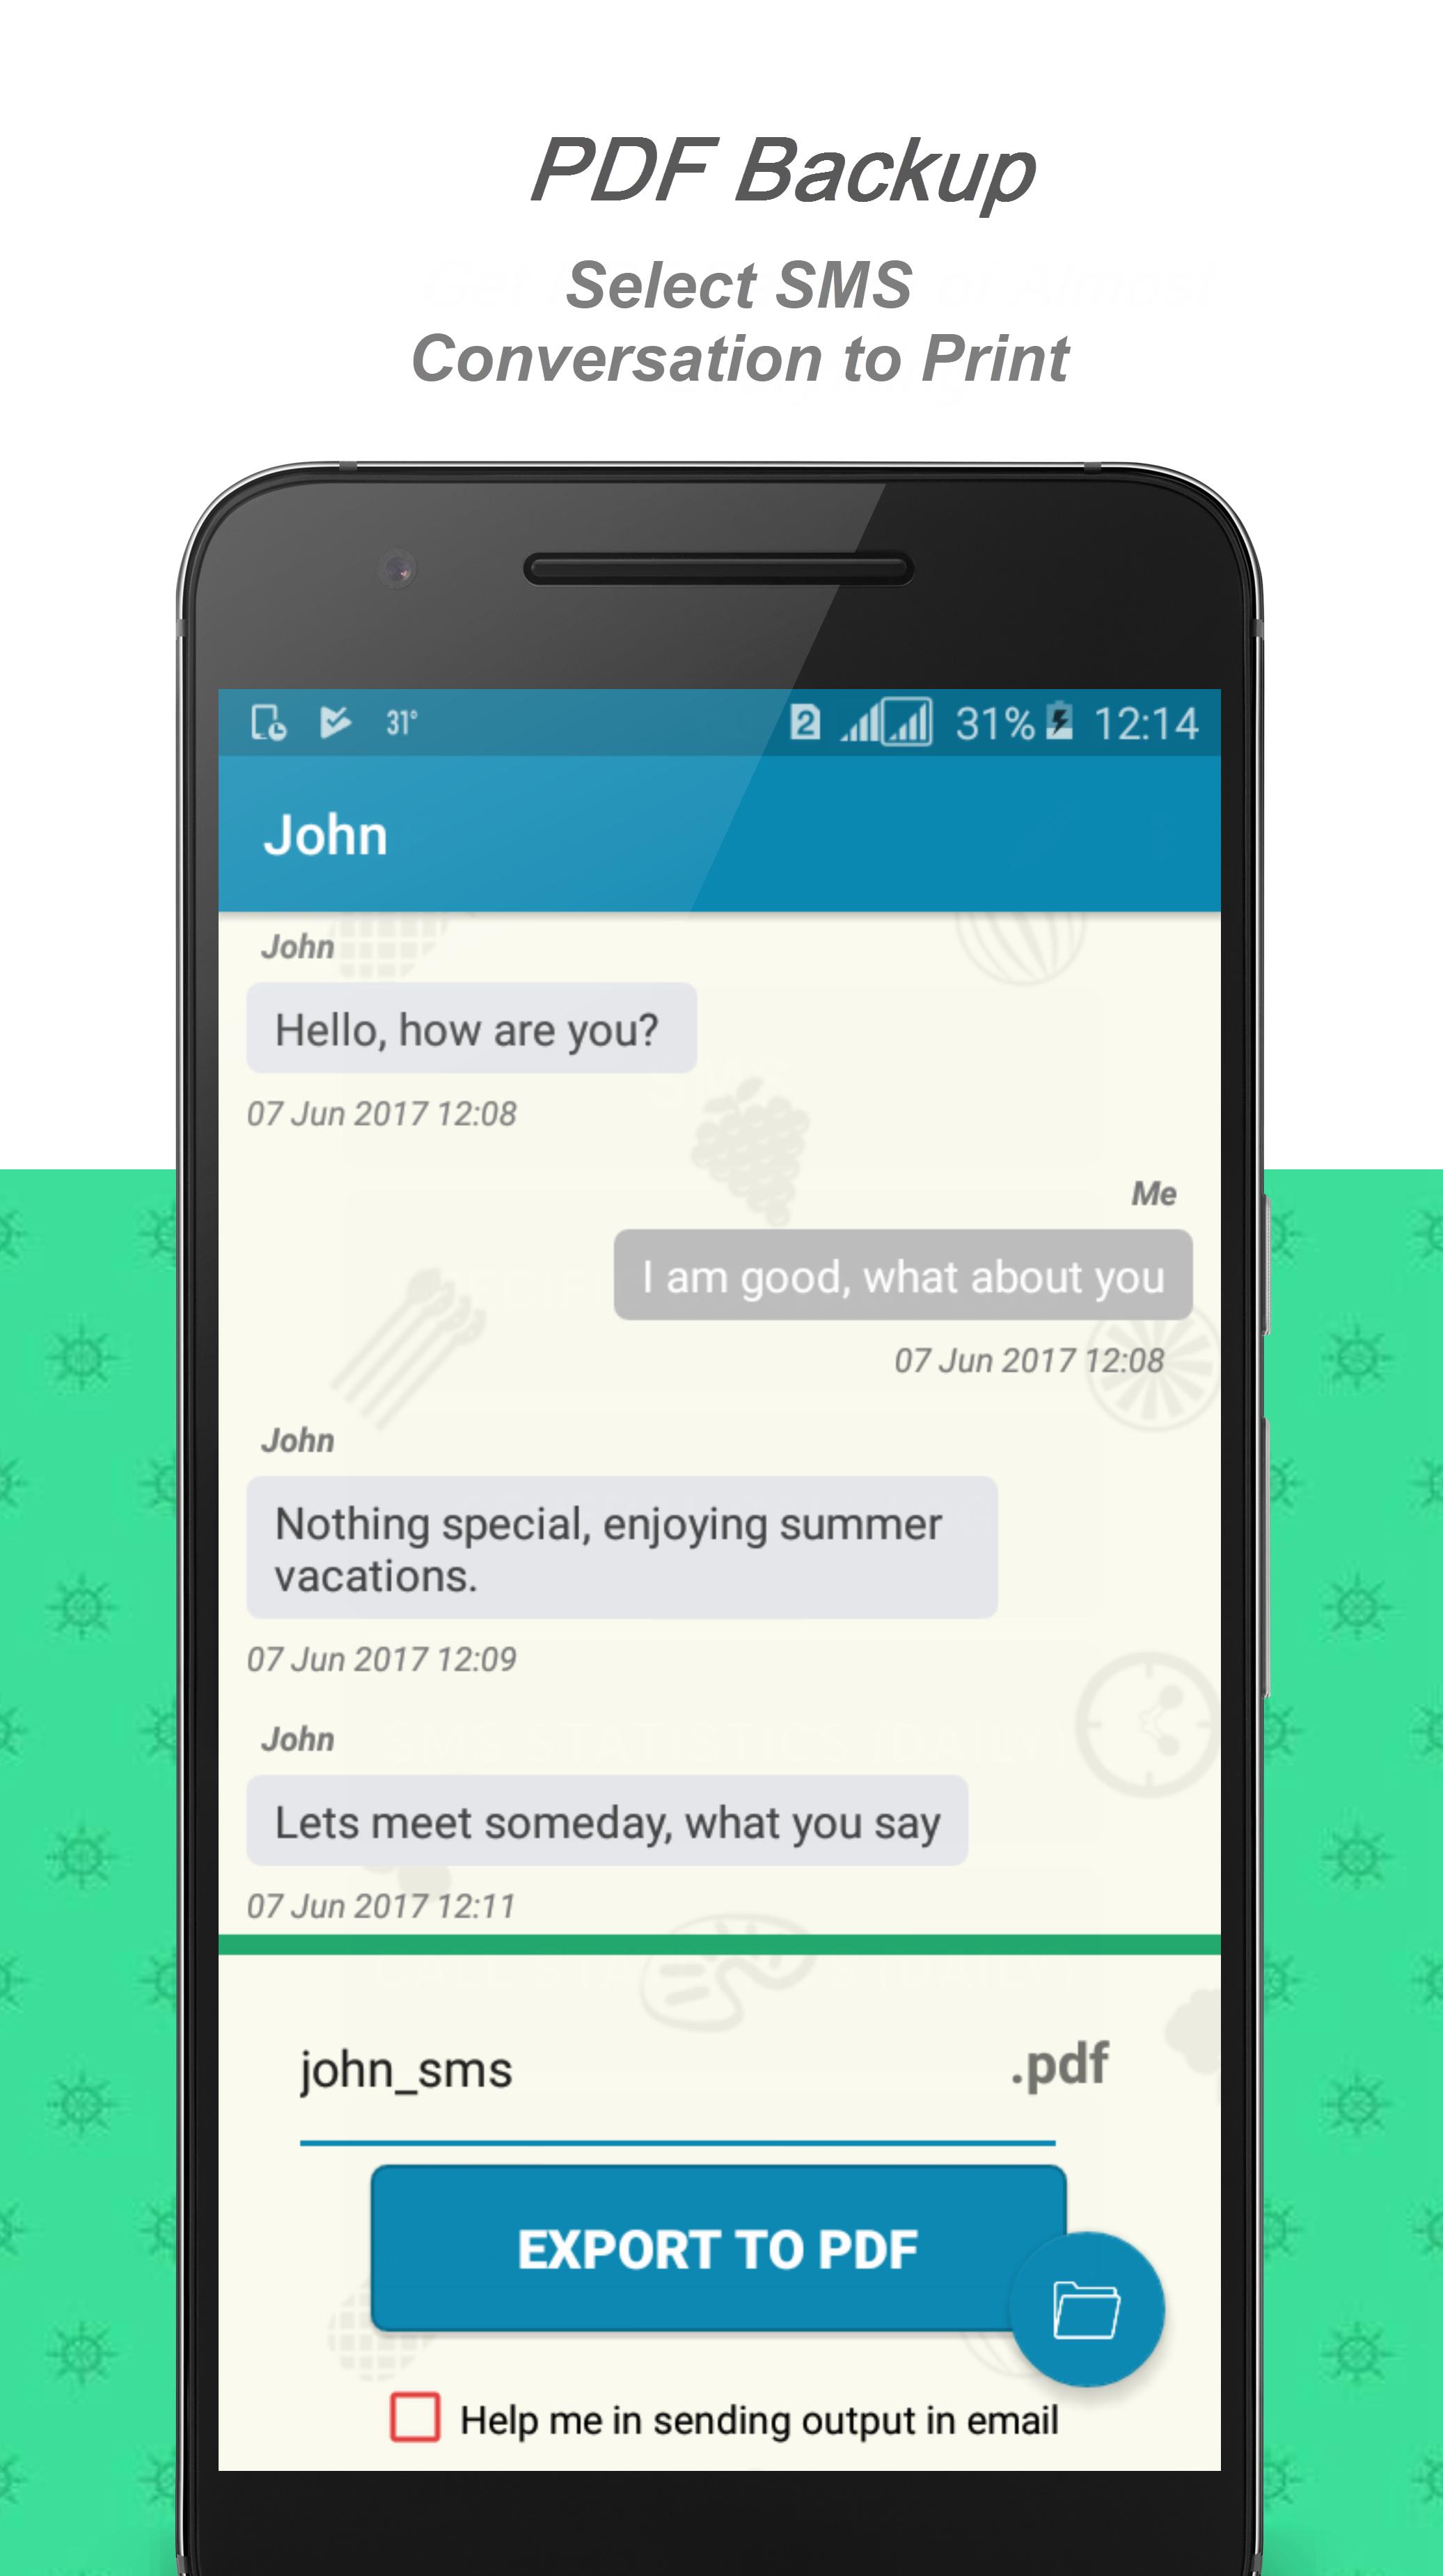 E2PDF - Backup Restore SMS,Call,Contact,TrueCaller 19.08.2020 Screenshot 6